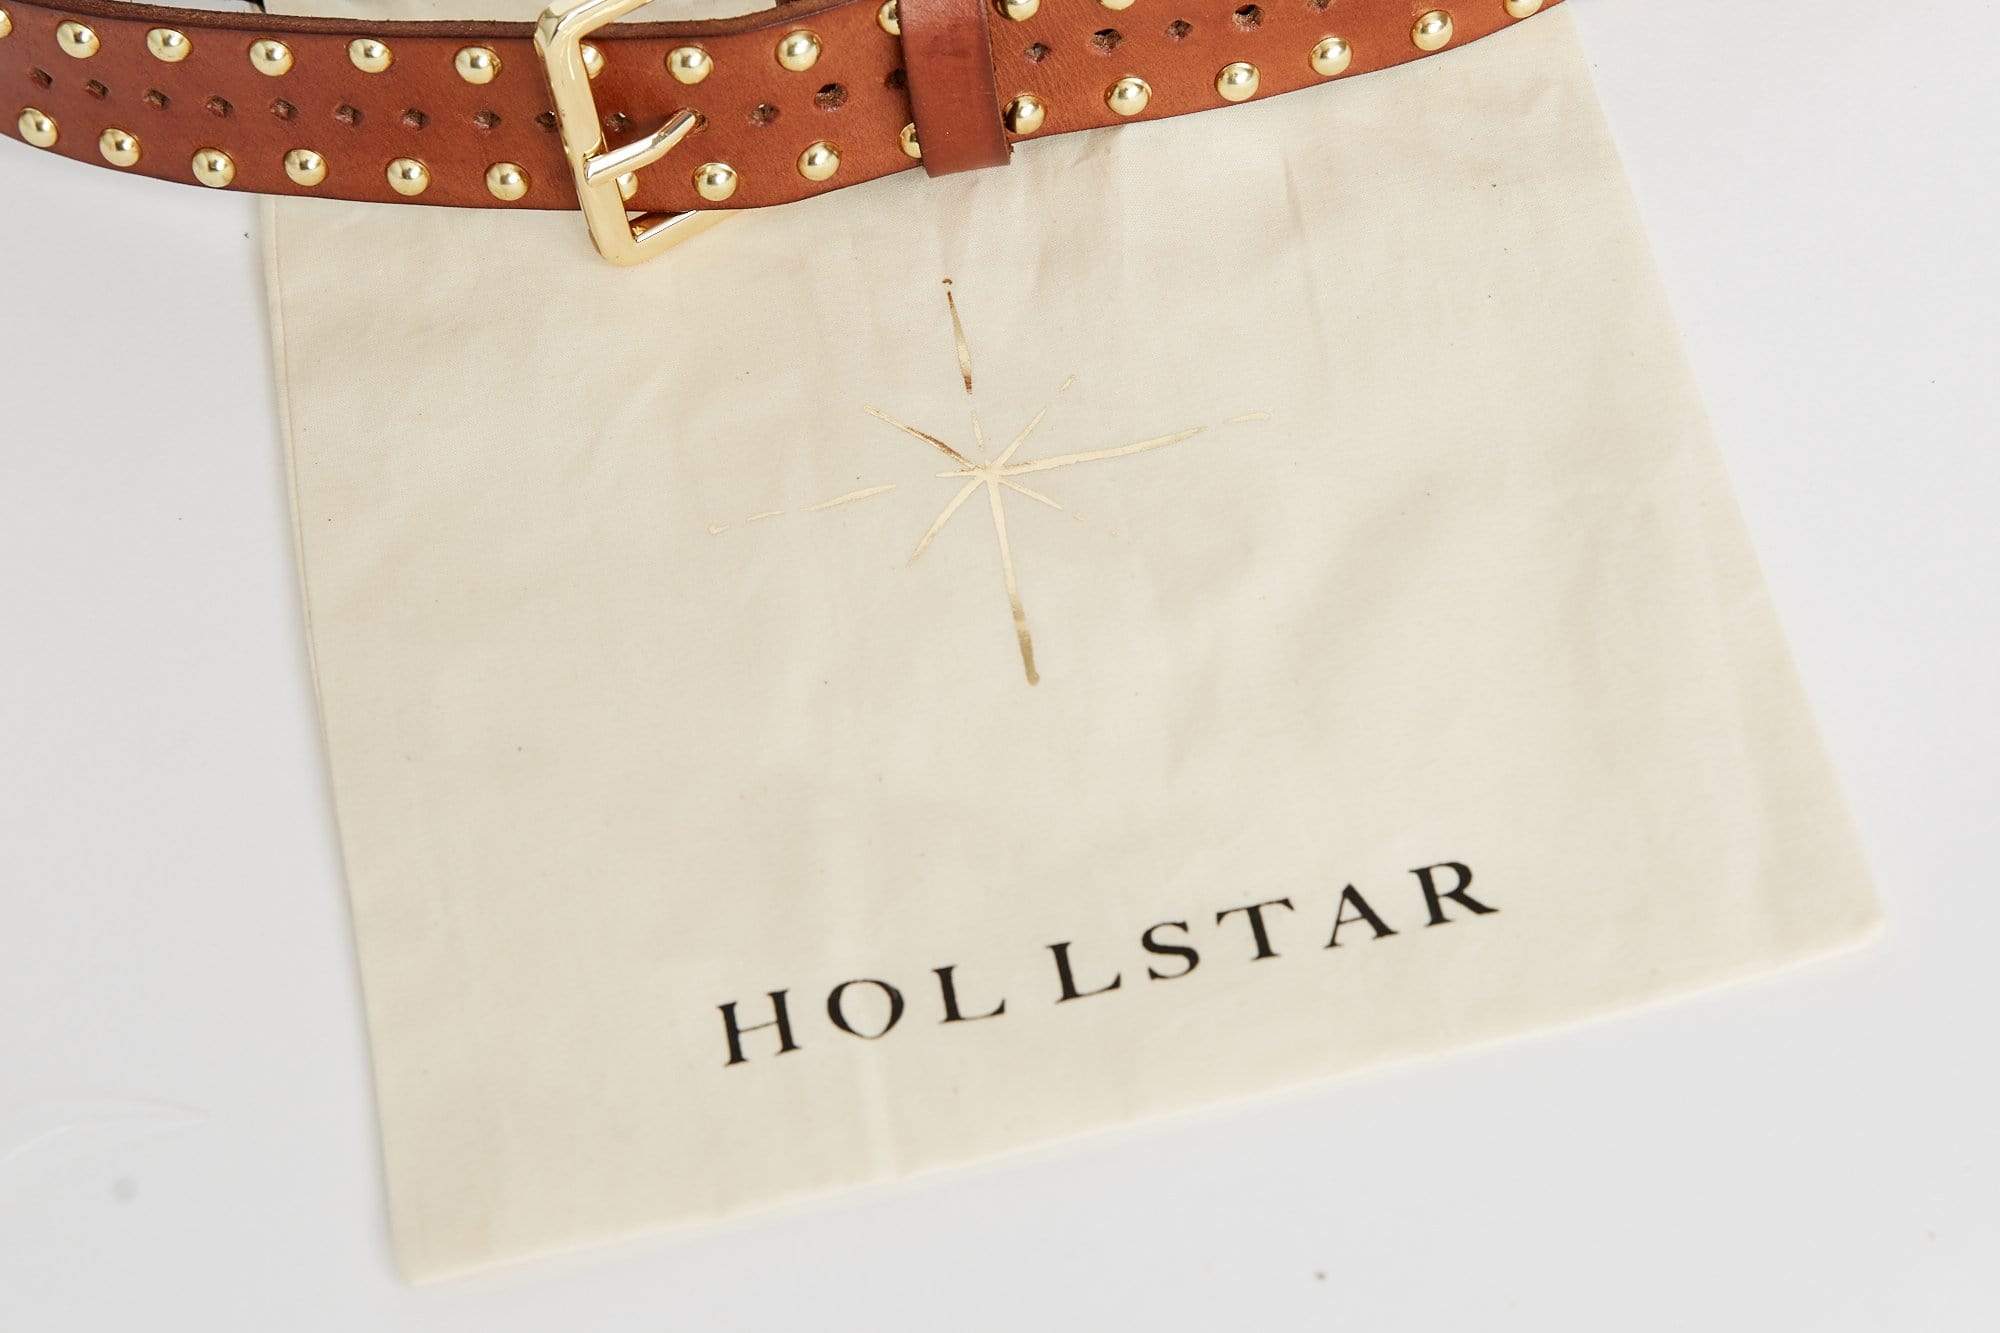 Shop Hollstar Sterling Leather Belt in Tan by Caravan & Co. - Caravan & Co